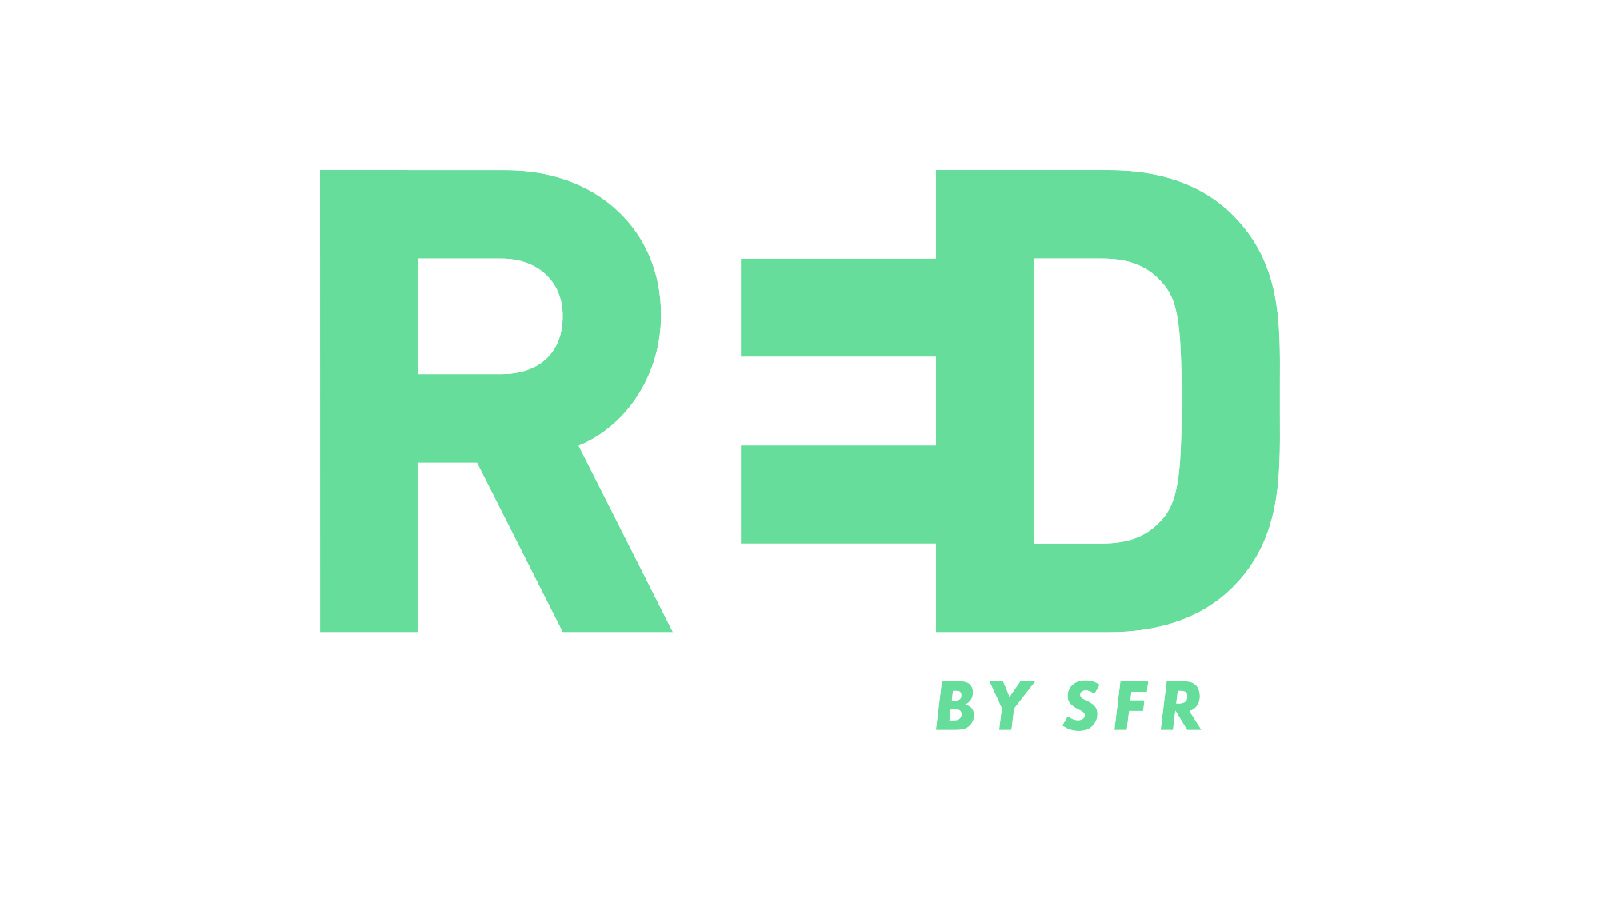 RED by SFR mobilnät: Vilken täckning har RED-nätverket i Frankrike?